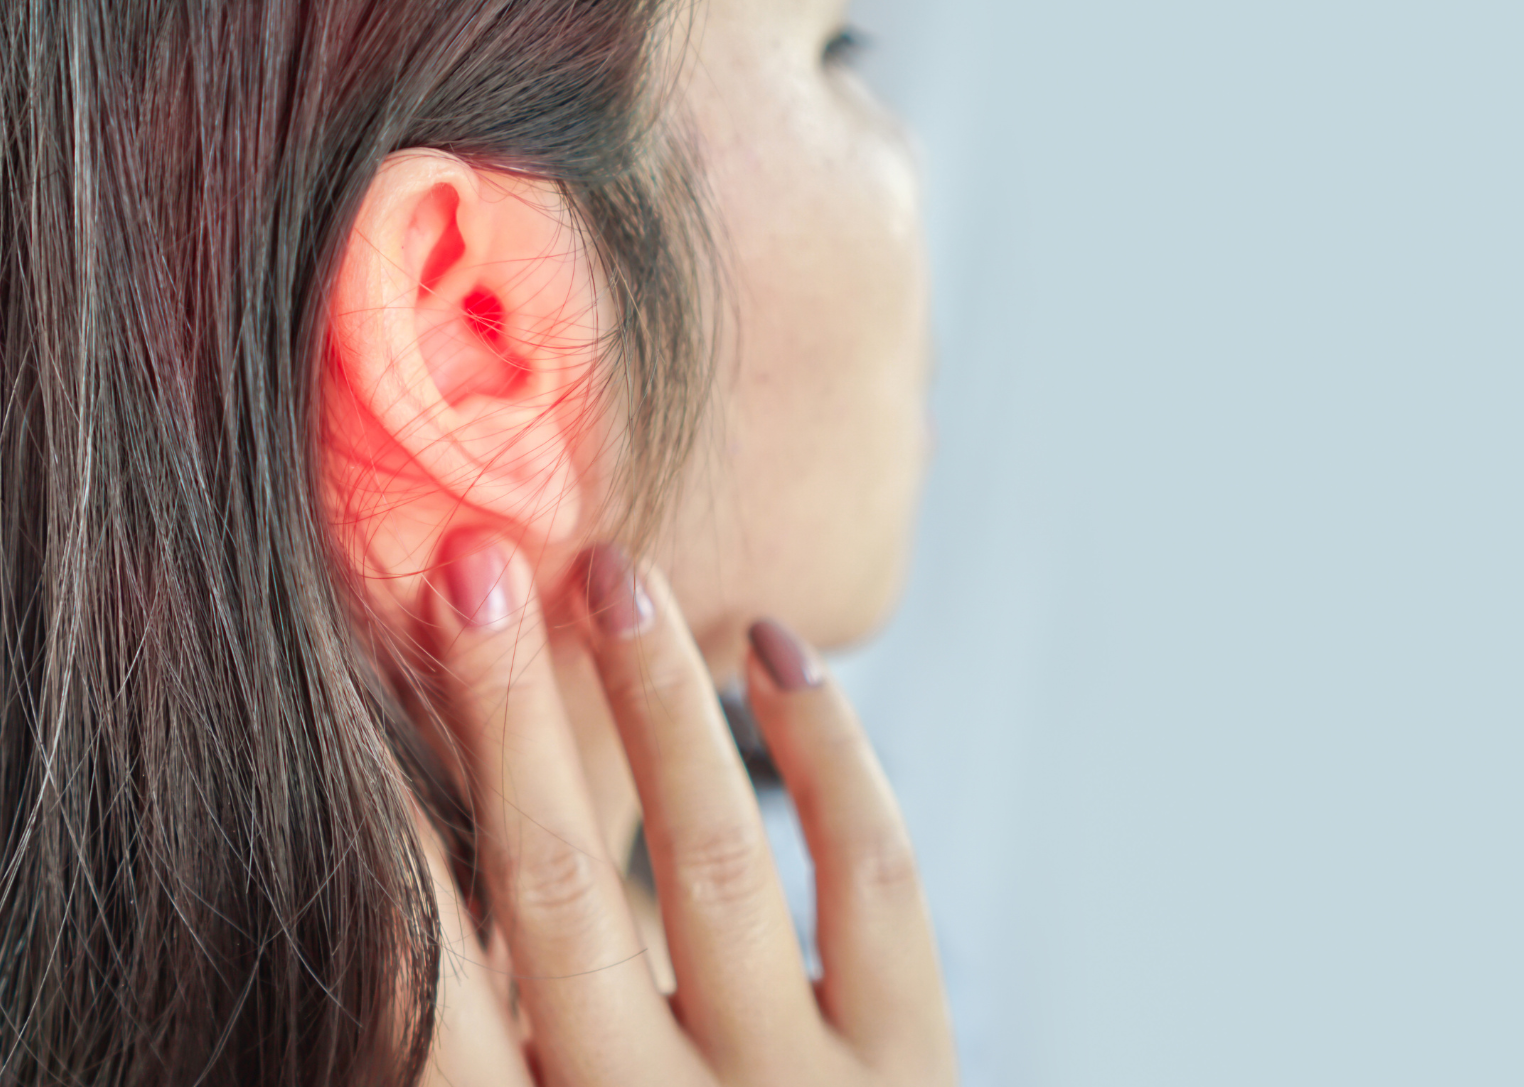 Tinnitus Awareness & Assessments